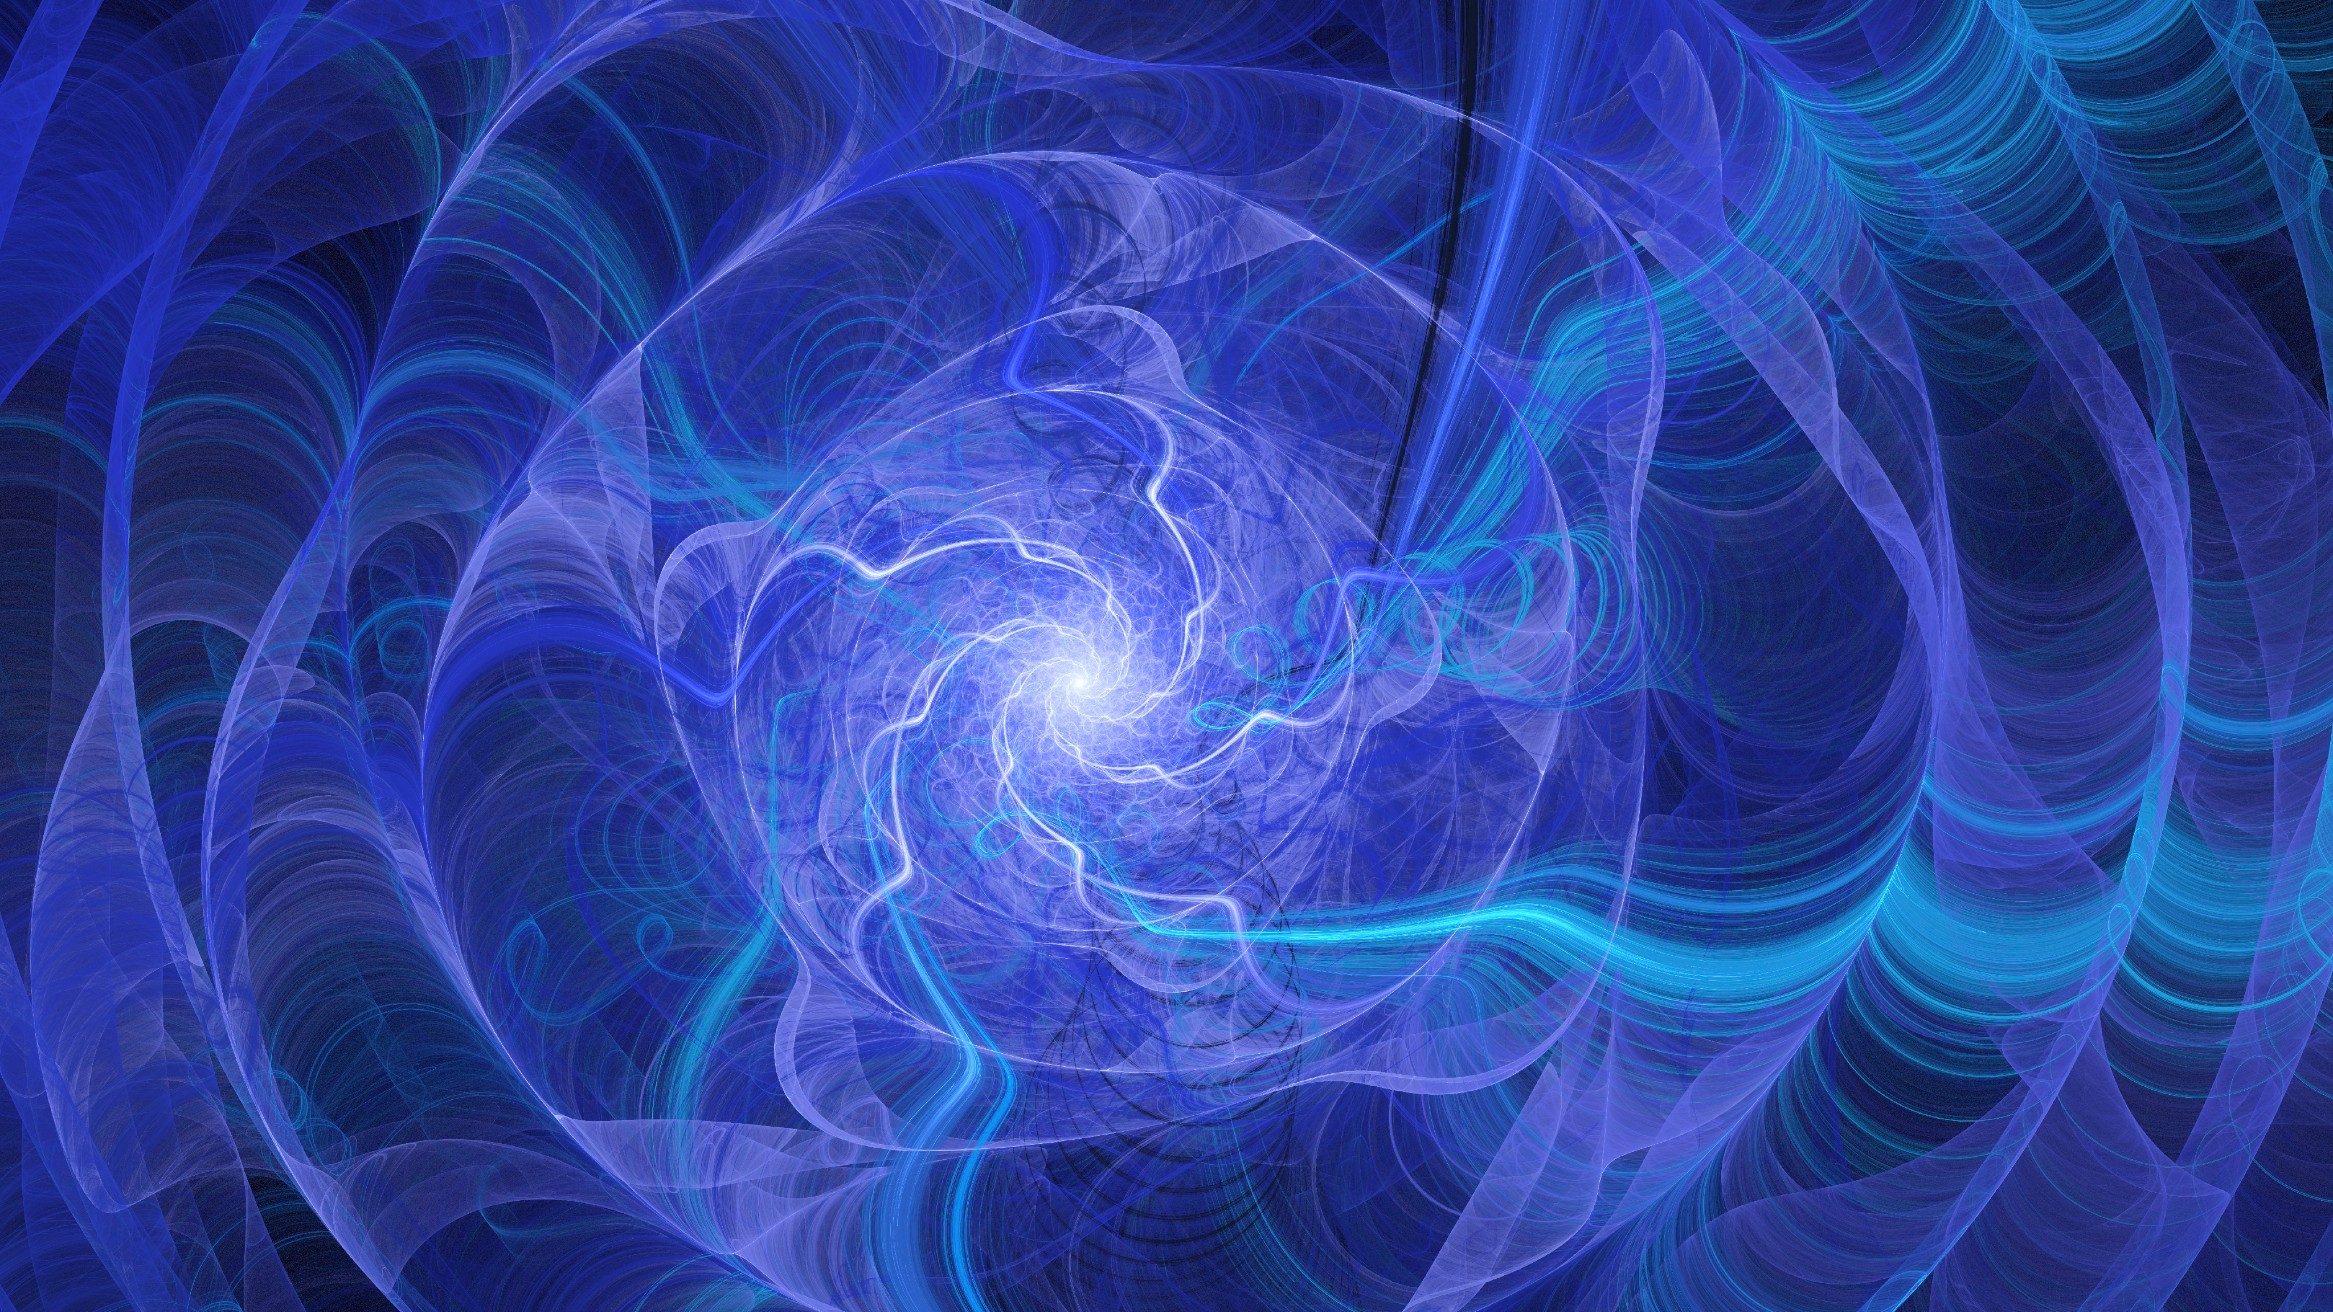 Blauwe en paarse cirkelvormige wervelingen van licht die worden vervormd als ze zich uitbreiden vanuit het heldere centrum om de snaartheorie conceptueel te illustreren